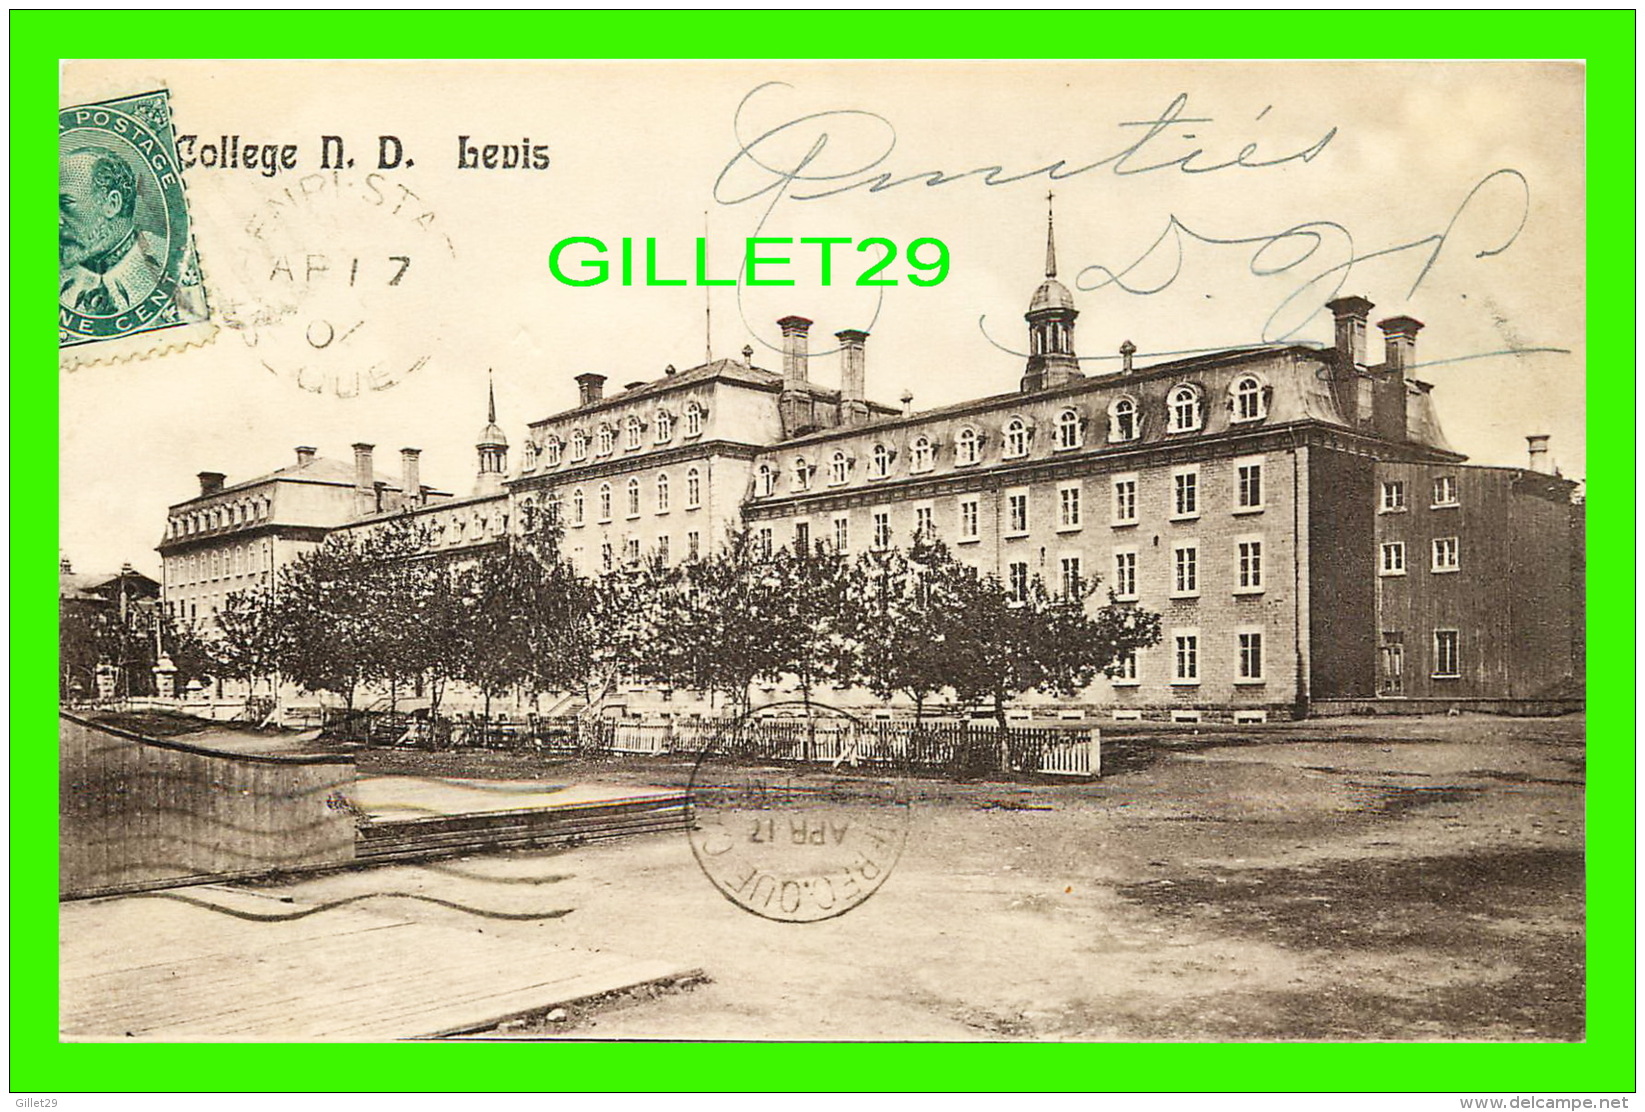 LEVIS, QUÉBEC -  COLLÈGE NOTRE-DAME - CIRCULÉE EN 1908 - ILLUSTRATED POST CARD CO - - Levis